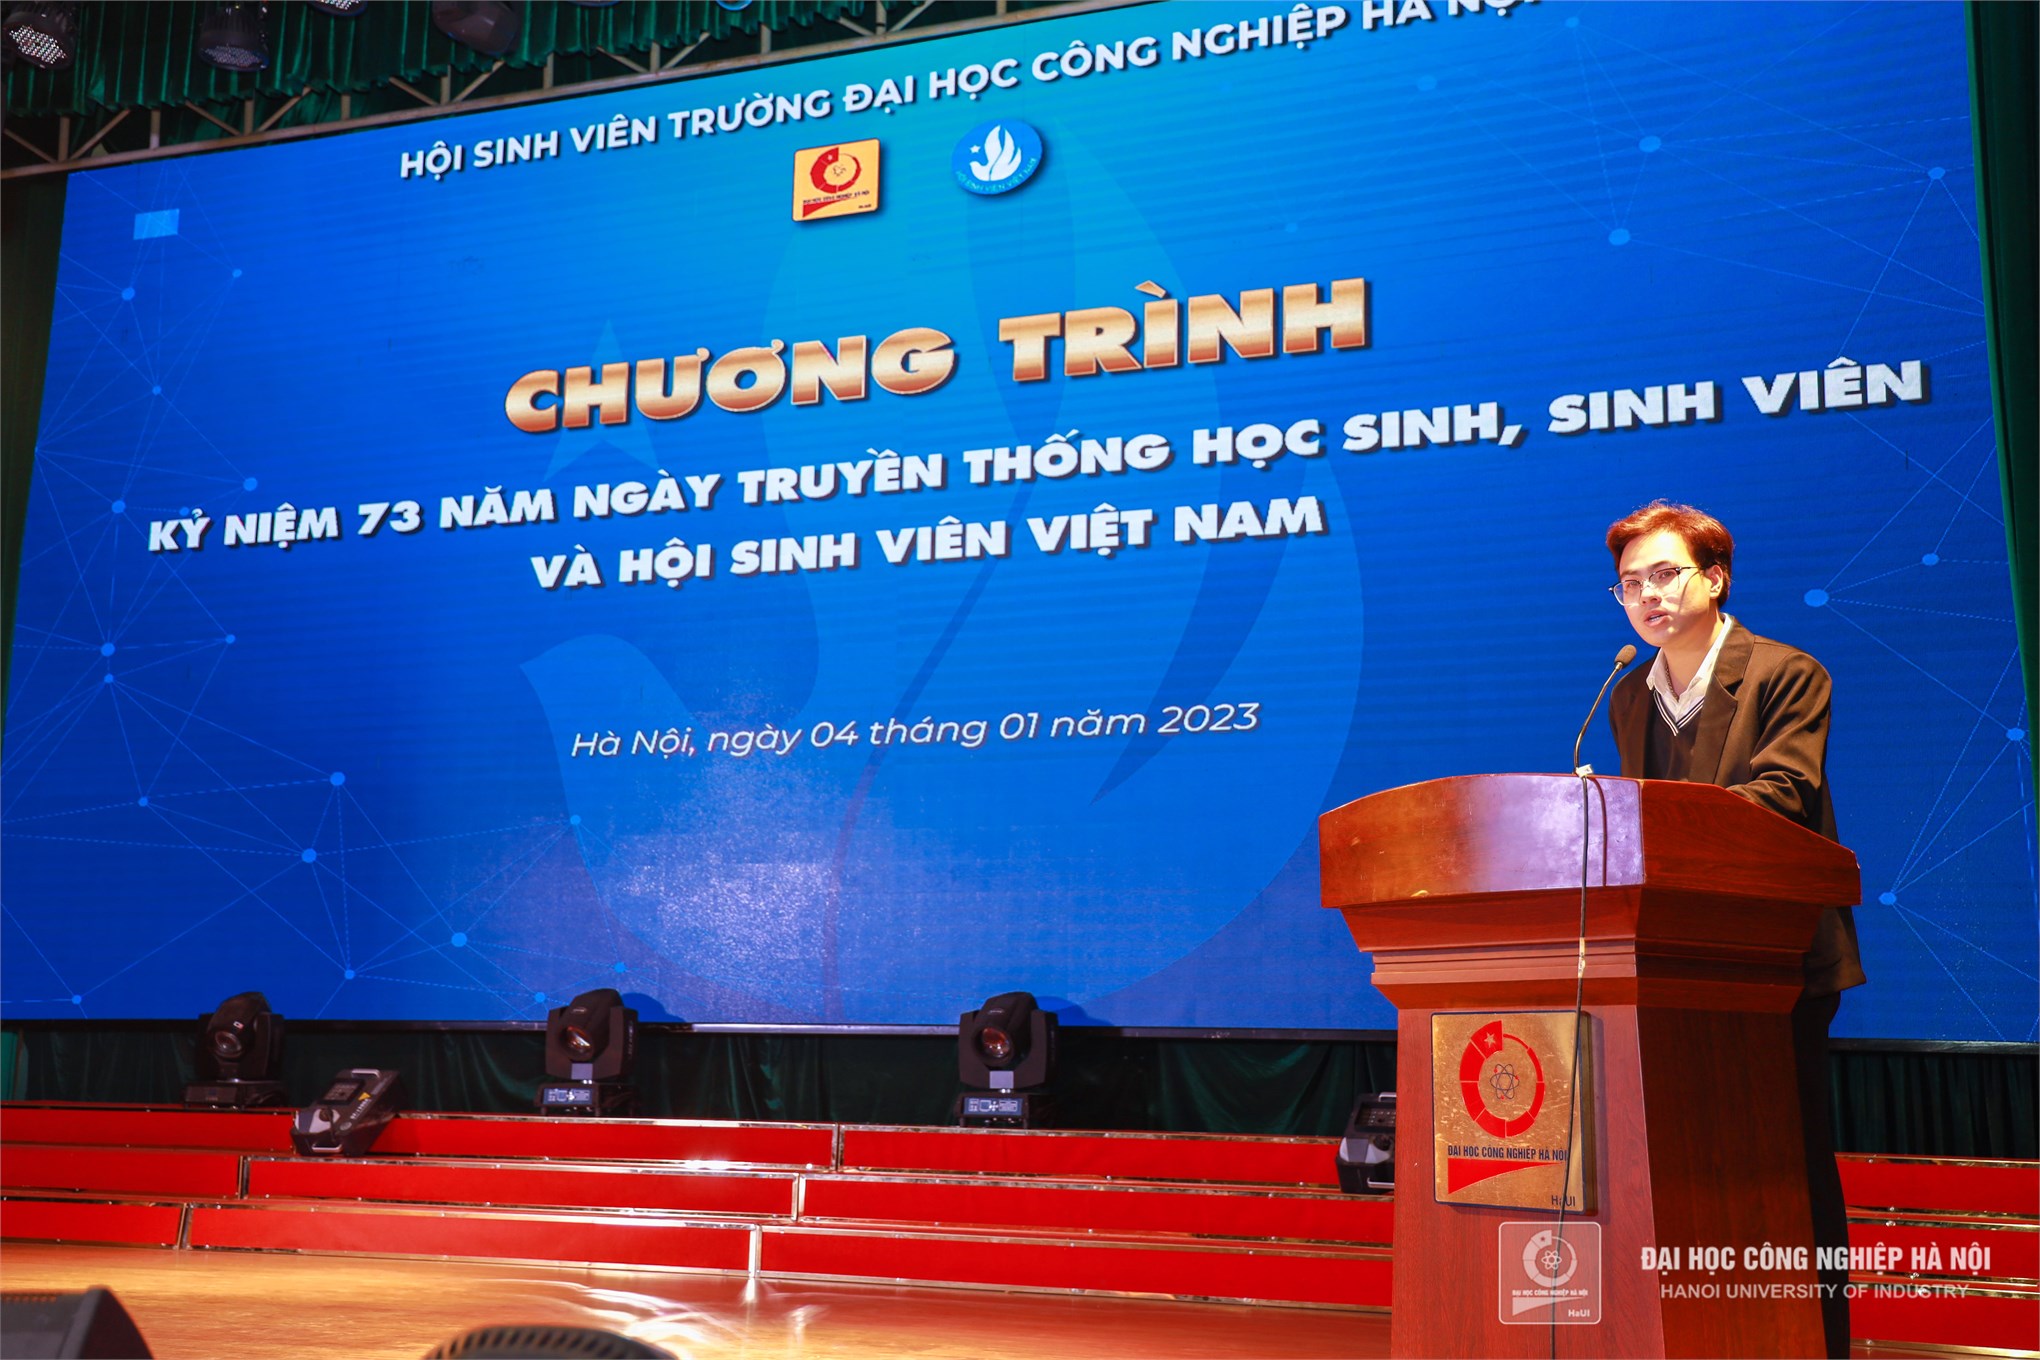 Kỷ niệm 73 năm Ngày truyền thống học sinh sinh viên và Hội Sinh viên Việt Nam (09/01/1950 - 09/01/2023)